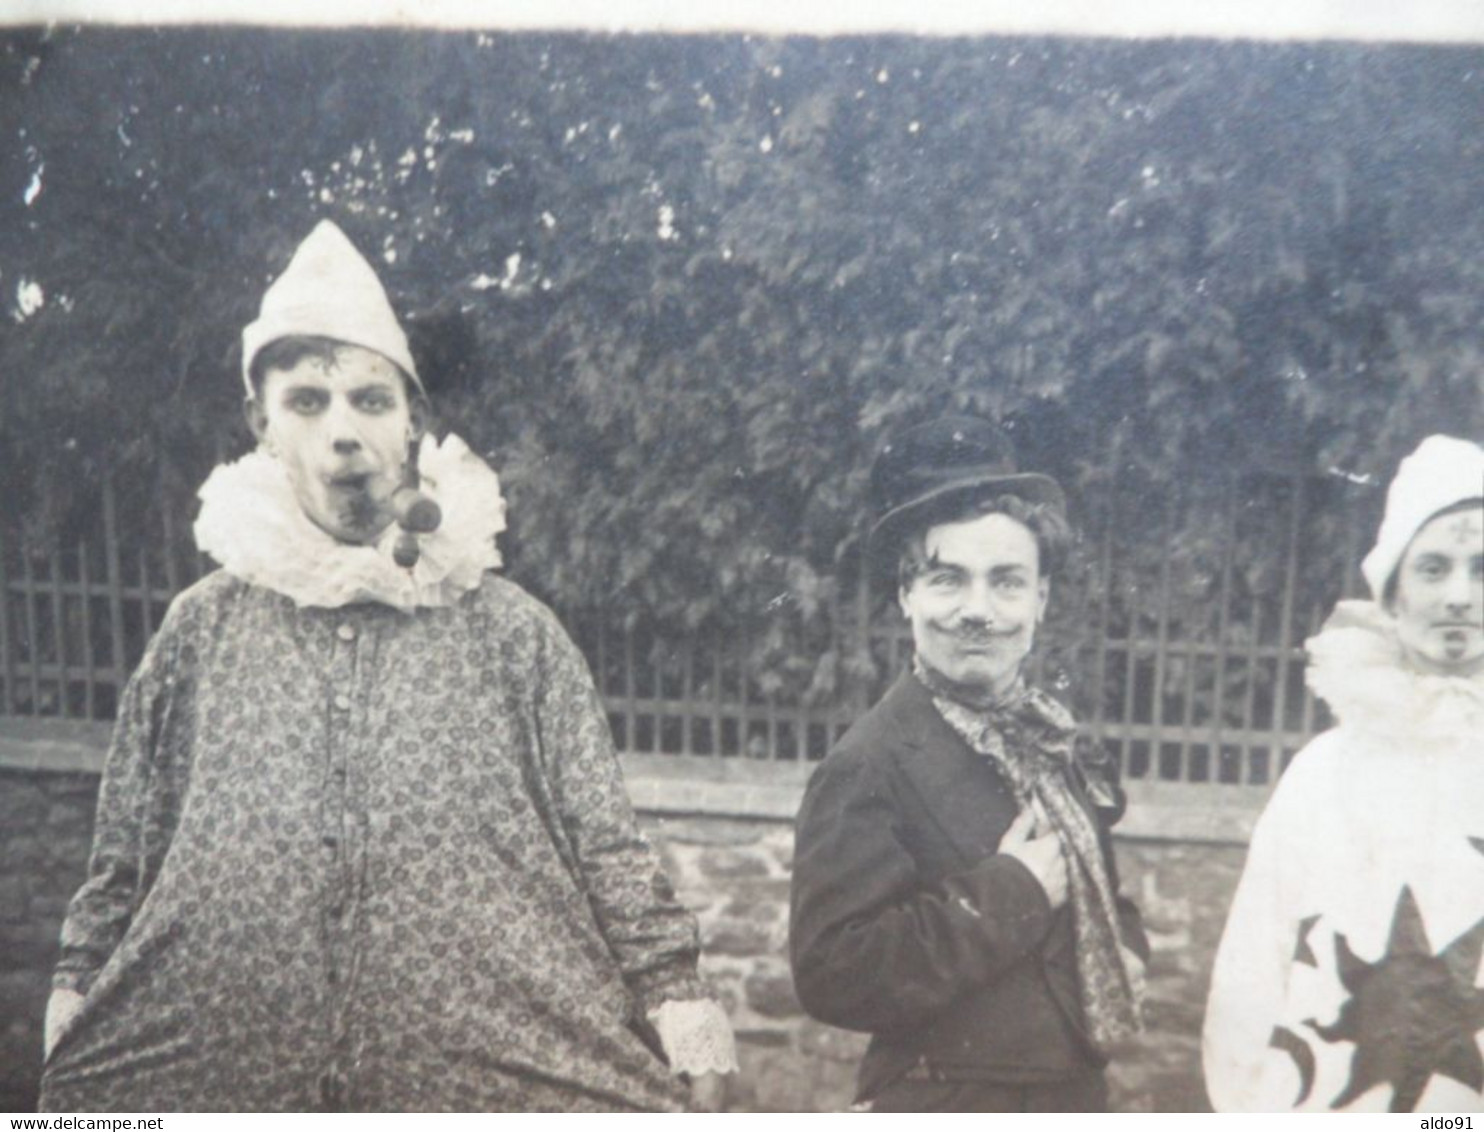 (Manche - Granville ????) - Lot de 2 photos "Kermesse, Fête, Cirque, déguisement"...à localiser (année 1924)